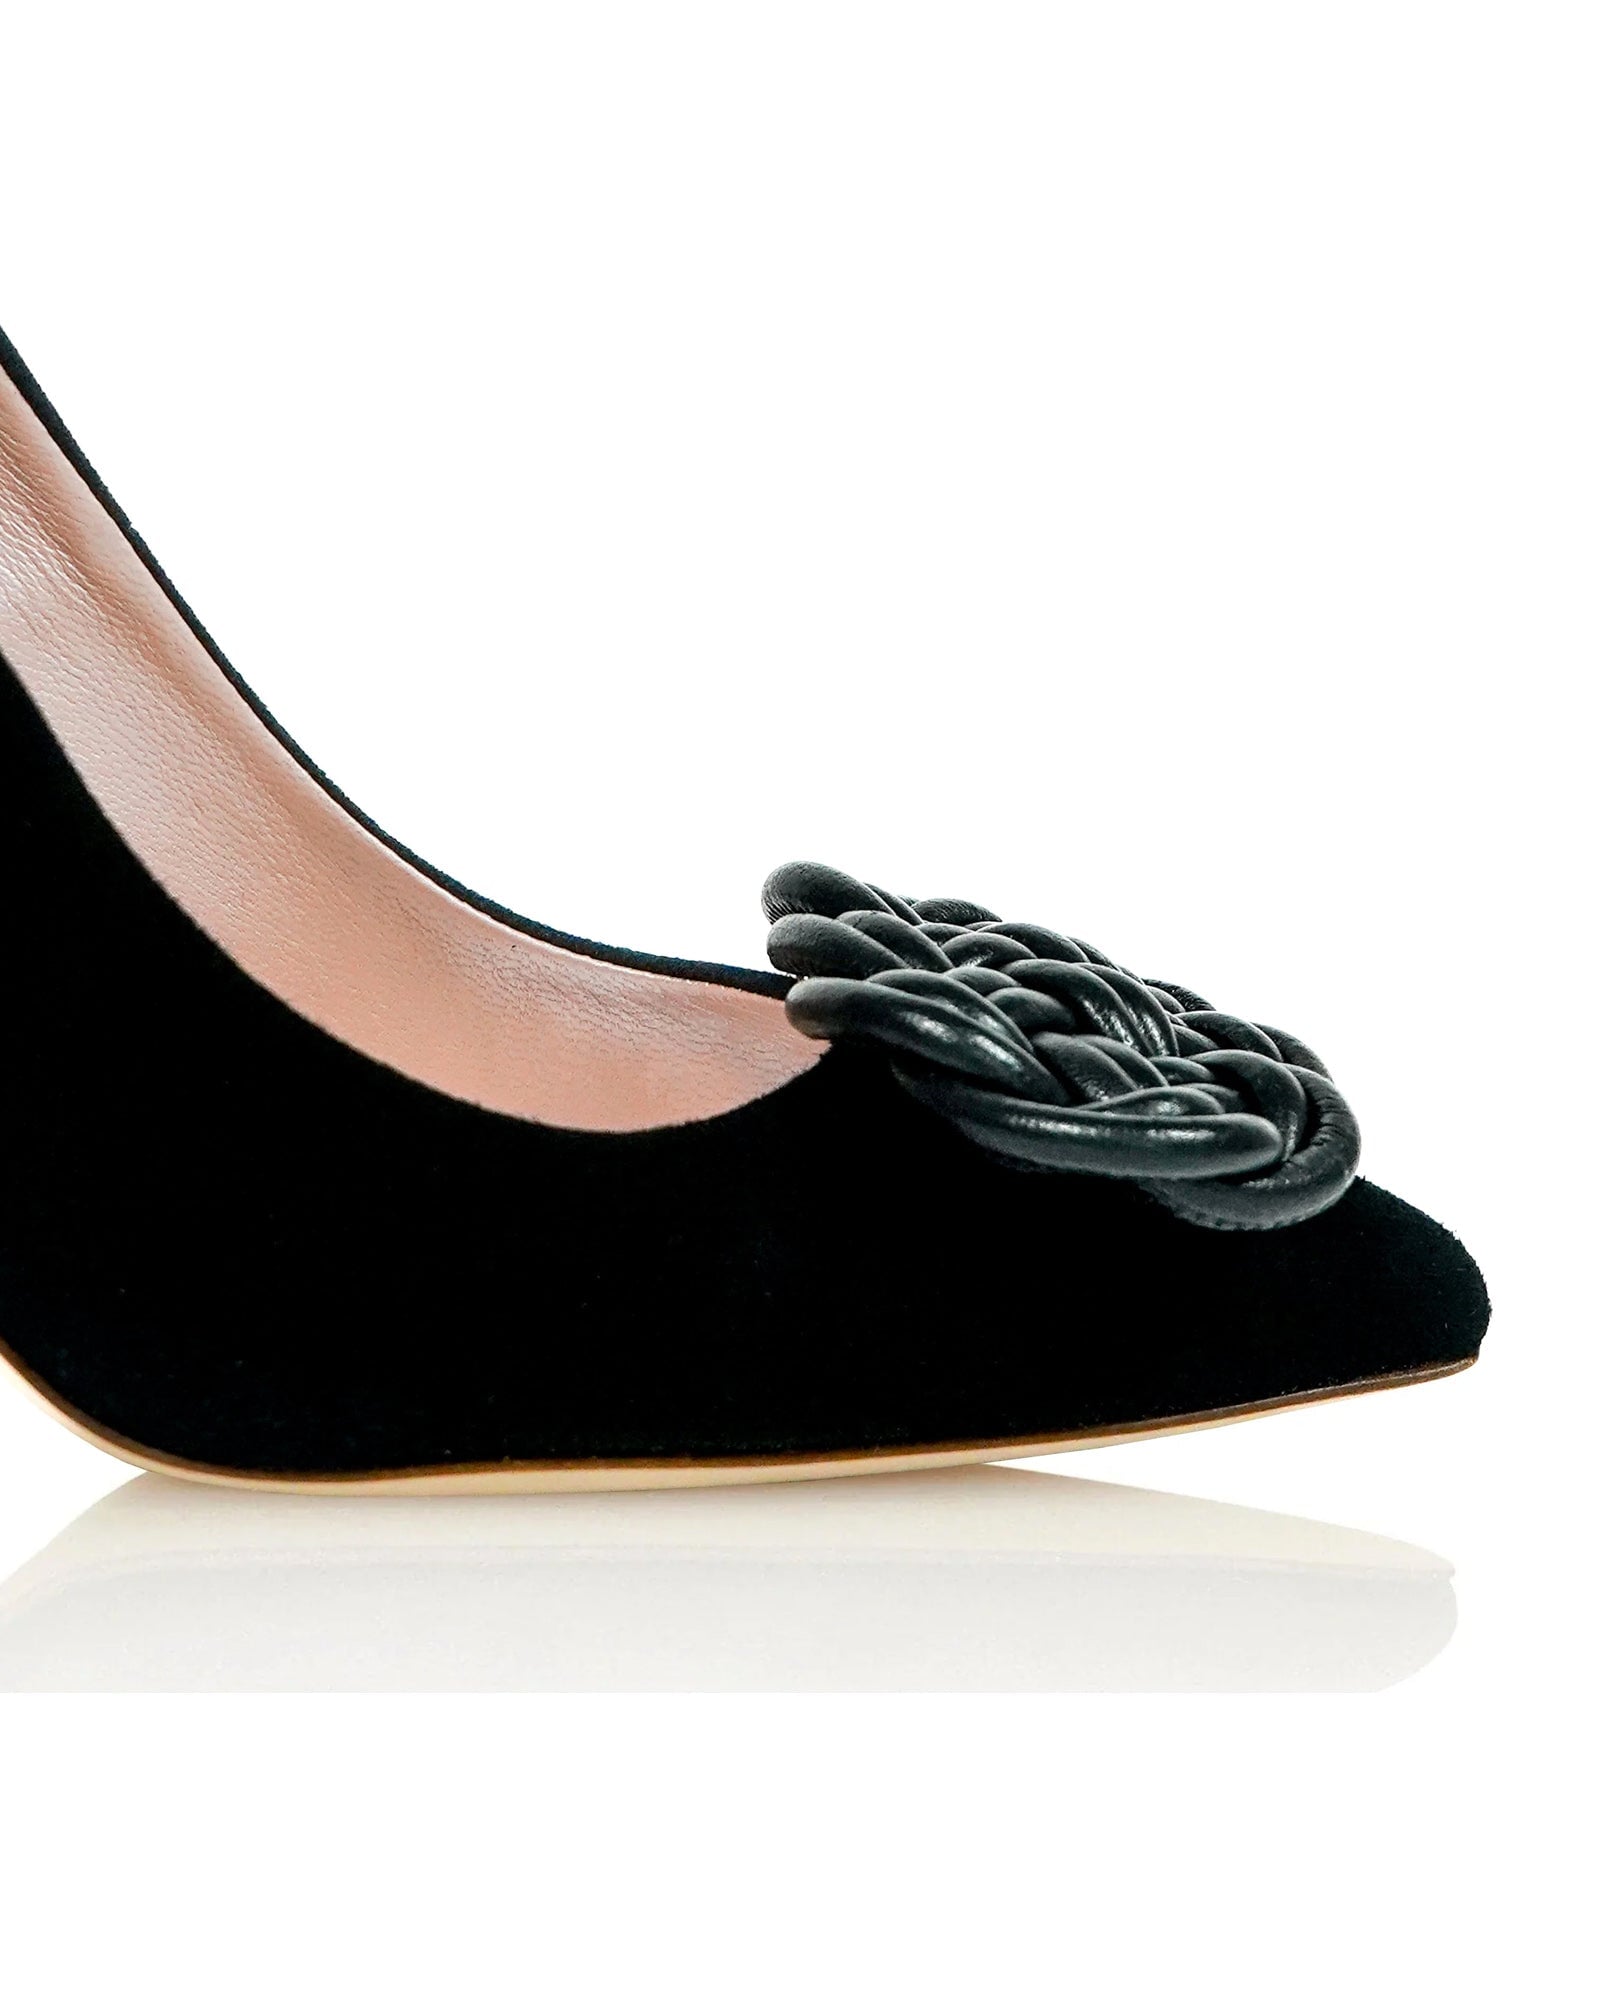 Panama Woven Shoe Clips Shoe Clip Leather Shoe Clip  image